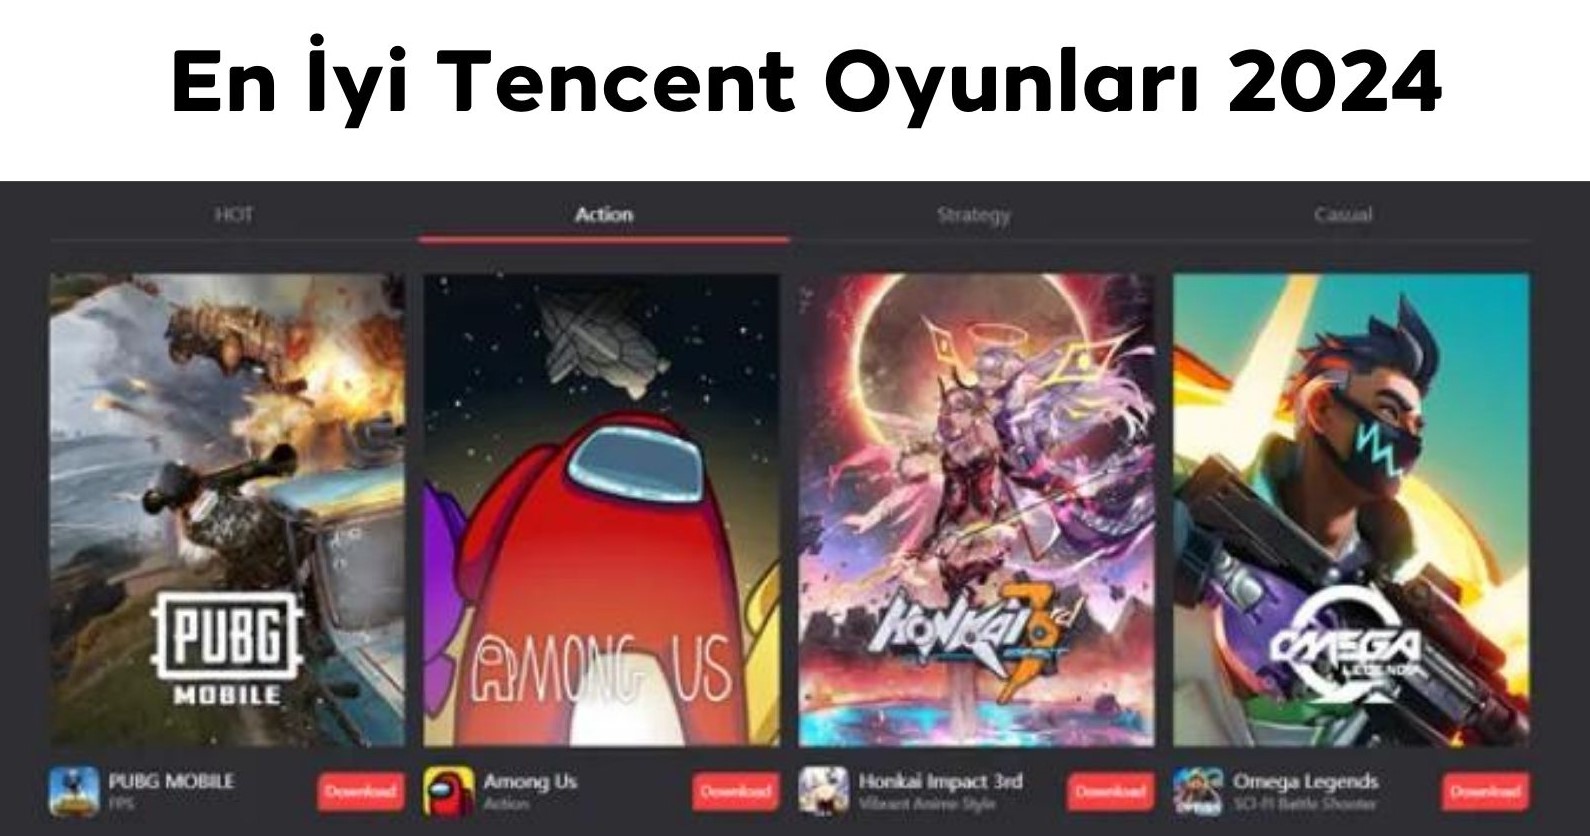 En İyi Tencent Oyunları 2024